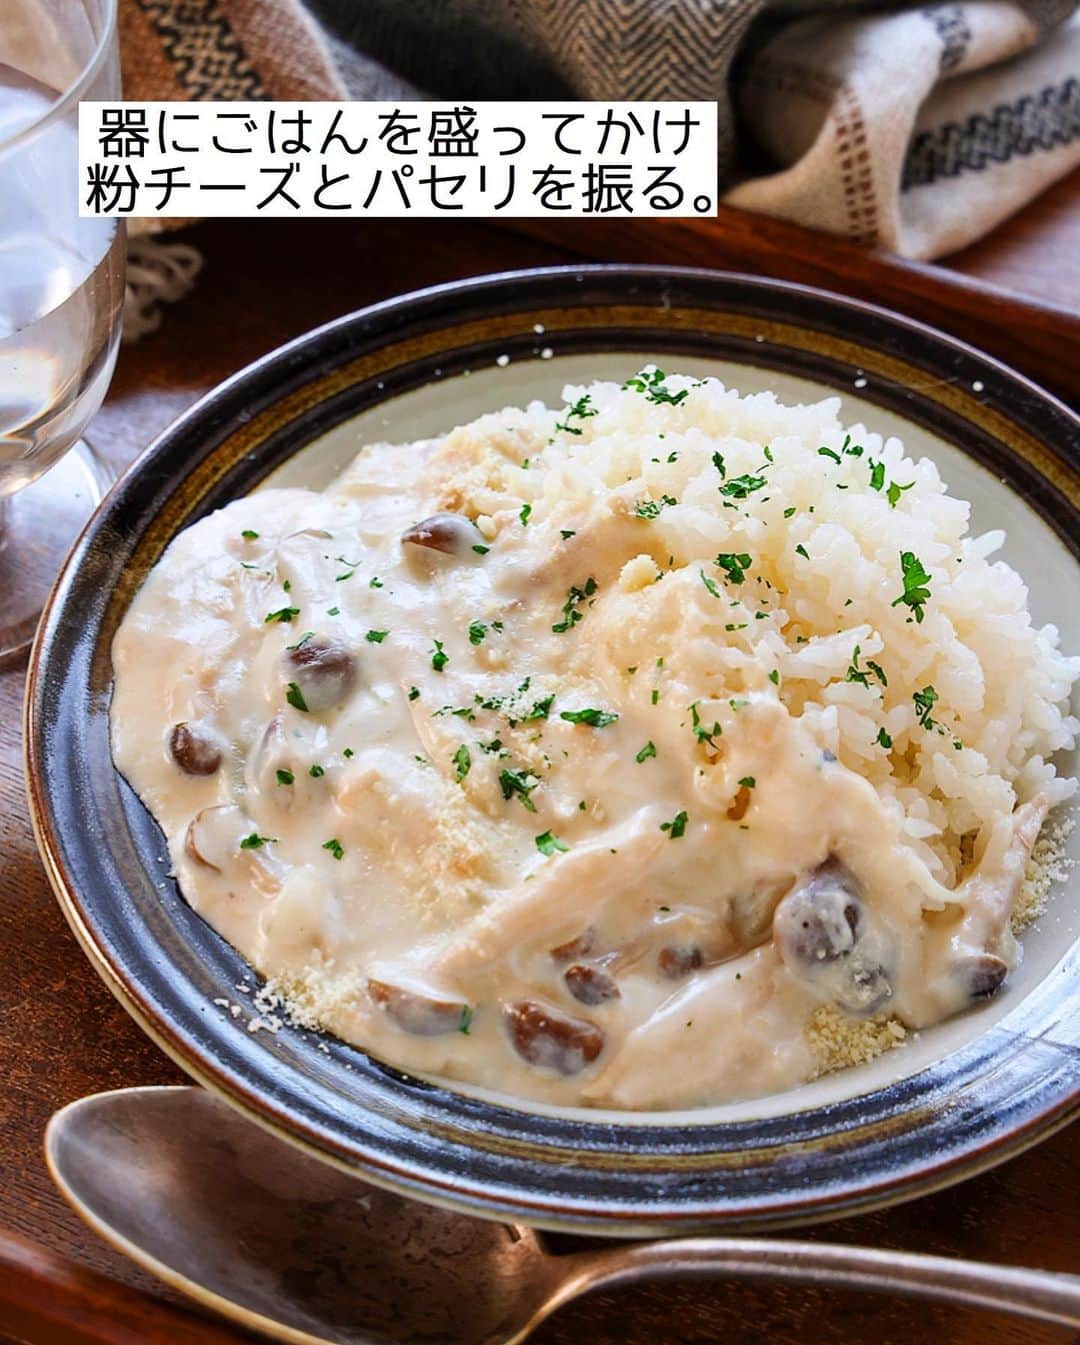 Mizuki【料理ブロガー・簡単レシピ】さんのインスタグラム写真 - (Mizuki【料理ブロガー・簡単レシピ】Instagram)「・ 【#レシピ 】ーーーーーーーーーーーーーーー 牛乳で簡単！ツナときのこのクリームライス ーーーーーーーーーーーーーーーーーーーーー ⁡ ⁡ ⁡ おはようございます(*^^*) ⁡ 今日ご紹介させていただくのは 素材のうま味たっぷり♩ \ ツナときのこのクリームライス / ⁡ 生クリームもホワイトソースも不要！ 牛乳で作る軽やかなクリーム煮を ごはんにかけてワンプレートに♡ フライパンで10分あればできる 見た目お洒落な簡単レシピです(*´艸`) ⁡ ちなみに、このクリーム煮 チーズをのせて焼けばグラタンに♩ 牛乳とコンソメを少し増やして パスタにかければクリームパスタに！ と、色々アレンジもできますよ〜♡ ⁡ とっても簡単にできるので よかったらお試し下さいね(*^^*) ⁡ ⁡ ⁡ ＿＿＿＿＿＿＿＿＿＿＿＿＿＿＿＿＿＿＿＿＿ 【2人分】 ツナ...1缶(70g) しめじ...1/2袋 玉ねぎ...1/2個 バター...15g 薄力粉...大1強 牛乳...250ml ●コンソメ...小1 ●塩こしょう...少々 ごはん・粉チーズ・パセリ...各適量 ⁡ 1.ツナは軽く油を切る。しめじはほぐし、玉ねぎは薄切りにする。 2.フライパンにバターを中火で熱して1を炒める。玉ねぎがしんなりしたら弱火にし、薄力粉を振り入れて1分炒める。 3.牛乳を3回に分けて加え、その都度よく混ぜる。●を加え、とろが付くまで中火で少し煮る。 4.器にごはんを盛って3をかけ、粉チーズとパセリを振る。 ￣￣￣￣￣￣￣￣￣￣￣￣￣￣￣￣￣￣￣￣￣ ⁡ ⁡ ⁡ 《ポイント》 ♦︎工程3では少し緩いかな？というタイミングで火からおろすと◎食べる時にちょうどいいとろみ加減になります♩ ♦︎チーズをのせて焼けばグラタンになります♩ ♦︎牛乳の代わりに豆乳を使う場合は分離しないように注意して下さい♩ ⁡ ⁡ ⁡ ⁡ ⁡ ⁡ ⁡ ⁡ \ 新刊予約開始しました /(9月24日発売) 🔹🔹🔹🔹🔹🔹🔹🔹🔹🔹🔹🔹 今日のごはんこれに決まり！ #Mizukiのレシピノート 決定版 500品 🔹🔹🔹🔹🔹🔹🔹🔹🔹🔹🔹🔹 ⁡ 総レシピ6000点の中からレシピを厳選！ まさかの【500レシピ掲載】しました⭐️ (もはや辞典...) ⁡ 肉や魚のメインおかずはもちろん 副菜、丼、麺、スープ、お菓子 ハレの日のレシピ、鍋のレシピまで 全てこの一冊で完結！！ ⁡ ⁡ 🎁新刊予約でエプロンが当たる🎁 プレゼントキャンペーン実施中 ￣￣￣￣￣￣￣￣￣￣￣￣￣￣￣￣￣￣￣￣￣ 【応募方法】 ❶1枚目に表紙画像 2枚目にAmazonで予約したことがわかる画像 (どちらもスクショでOK)を貼りつける。 ❷ハッシュタグ【#Mizukiのレシピノート 】 をつけて投稿！ ￣￣￣￣￣￣￣￣￣￣￣￣￣￣￣￣￣￣￣￣￣￣ ⁡ ⁡ ⁡ ⁡ ⁡ ＿＿＿＿＿＿＿＿＿＿＿＿＿＿＿＿ 🟥YouTube 料理動画配信中🟥 ￣￣￣￣￣￣￣￣￣￣￣￣￣￣￣￣ 料理とお菓子の簡単レシピを ご紹介しています☺️💓 ⁡ 【奇跡のキッチン】で検索🔍 (ハイライトからも飛べます✨) ￣￣￣￣￣￣￣￣￣￣￣￣￣￣￣￣ ⁡ ⁡ ⁡ ＿＿＿＿＿＿＿＿＿＿＿＿＿＿＿＿ 🔶🔶recipe book🔶🔶 ￣￣￣￣￣￣￣￣￣￣￣￣￣￣￣￣ ホケミレシピの決定版♩ \はじめてでも失敗しない/ 📙ホットケーキミックスのお菓子 ⁡ NHKまる得マガジンテキスト☆ ホットケーキミックス で ⁡ 📗絶品おやつ&意外なランチ ⁡ しんどくない献立、考えました♩ \𝟣𝟧分でいただきます/ 📕#Mizukiの2品献立 ⁡ 和食をもっとカジュアルに♩ \毎日のごはんがラクになる/ 📘Mizukiの今どき和食  ＿＿＿＿＿＿＿＿＿＿＿＿＿＿＿＿＿ ⁡ ⁡ ⁡ ⁡ #ツナときのこのクリームライスm #クリームライス #牛乳  #クリーム煮　#ツナ #mizuki #簡単レシピ #時短レシピ #節約レシピ #料理 #料理初心者  #時短ごはん #節約ごはん #フーディーテーブル #おうちごはん #デリスタグラマー #おうちごはんlover #料理好きな人と繋がりたい #写真好きな人と繋がりたい #foodpick#cooking#recipe」8月31日 7時17分 - mizuki_31cafe